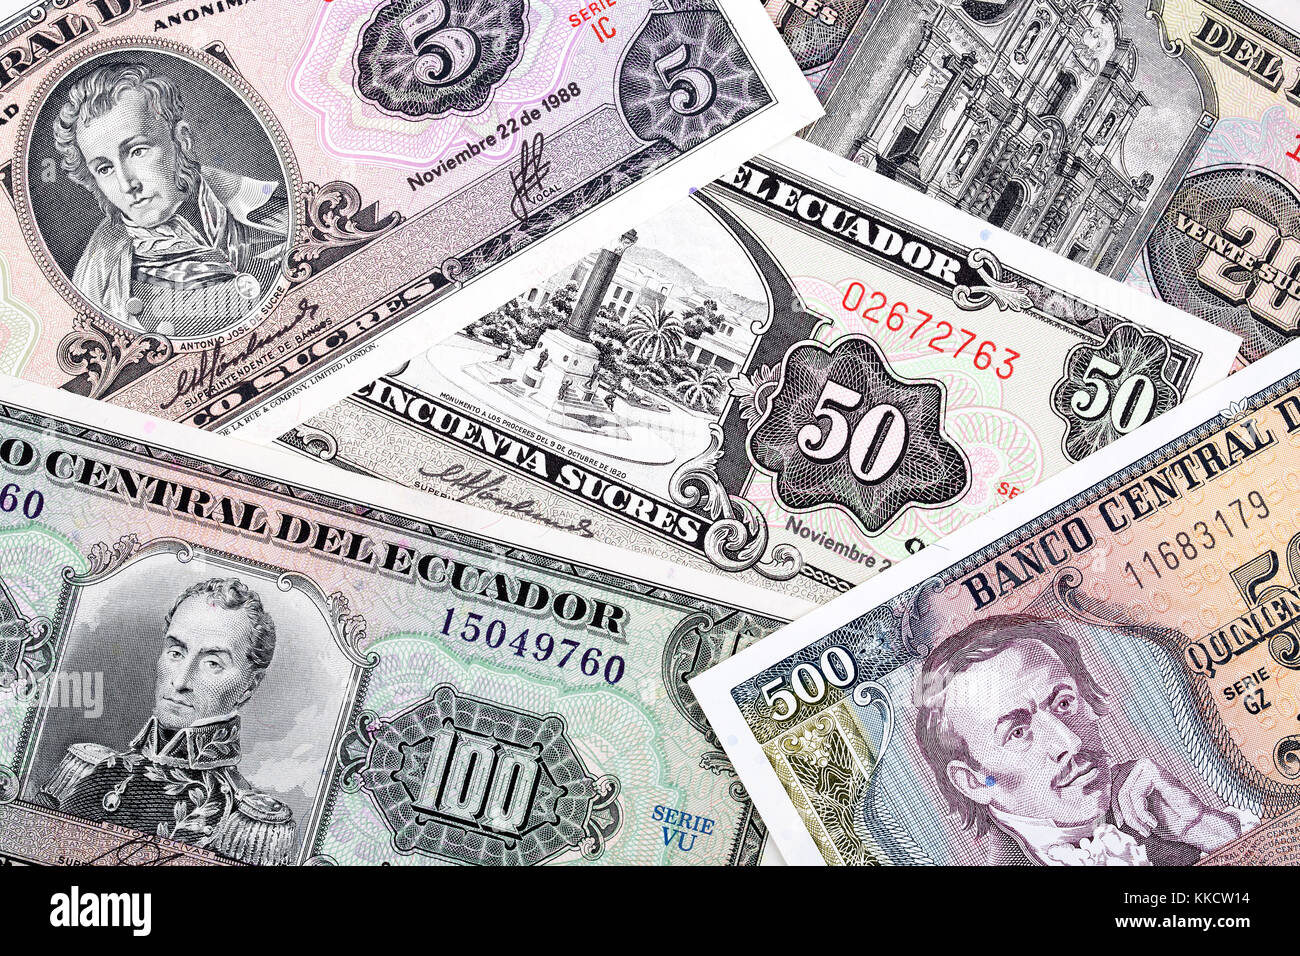 Old Ecuadorian money, a background Stock Photo